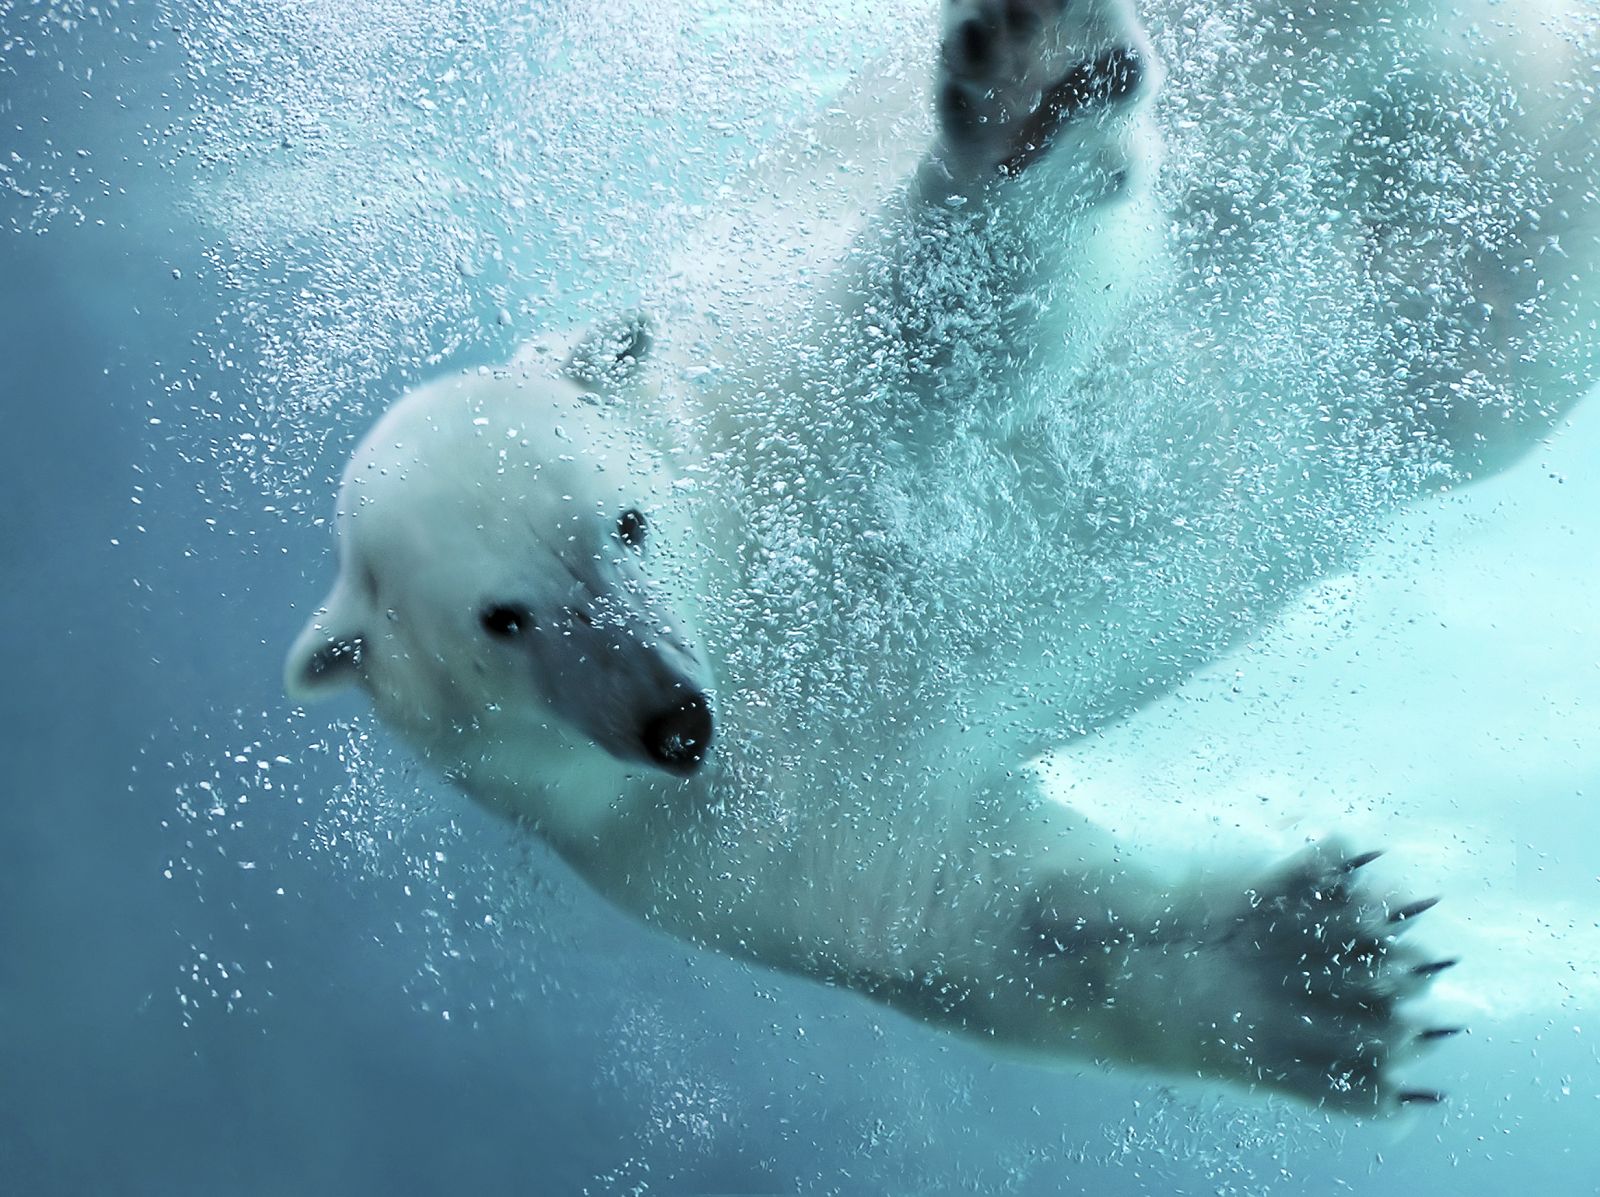 Según el estudio, los osos polares han perdido hasta un 11% de su tamaño en los últimos años por el cambio climático